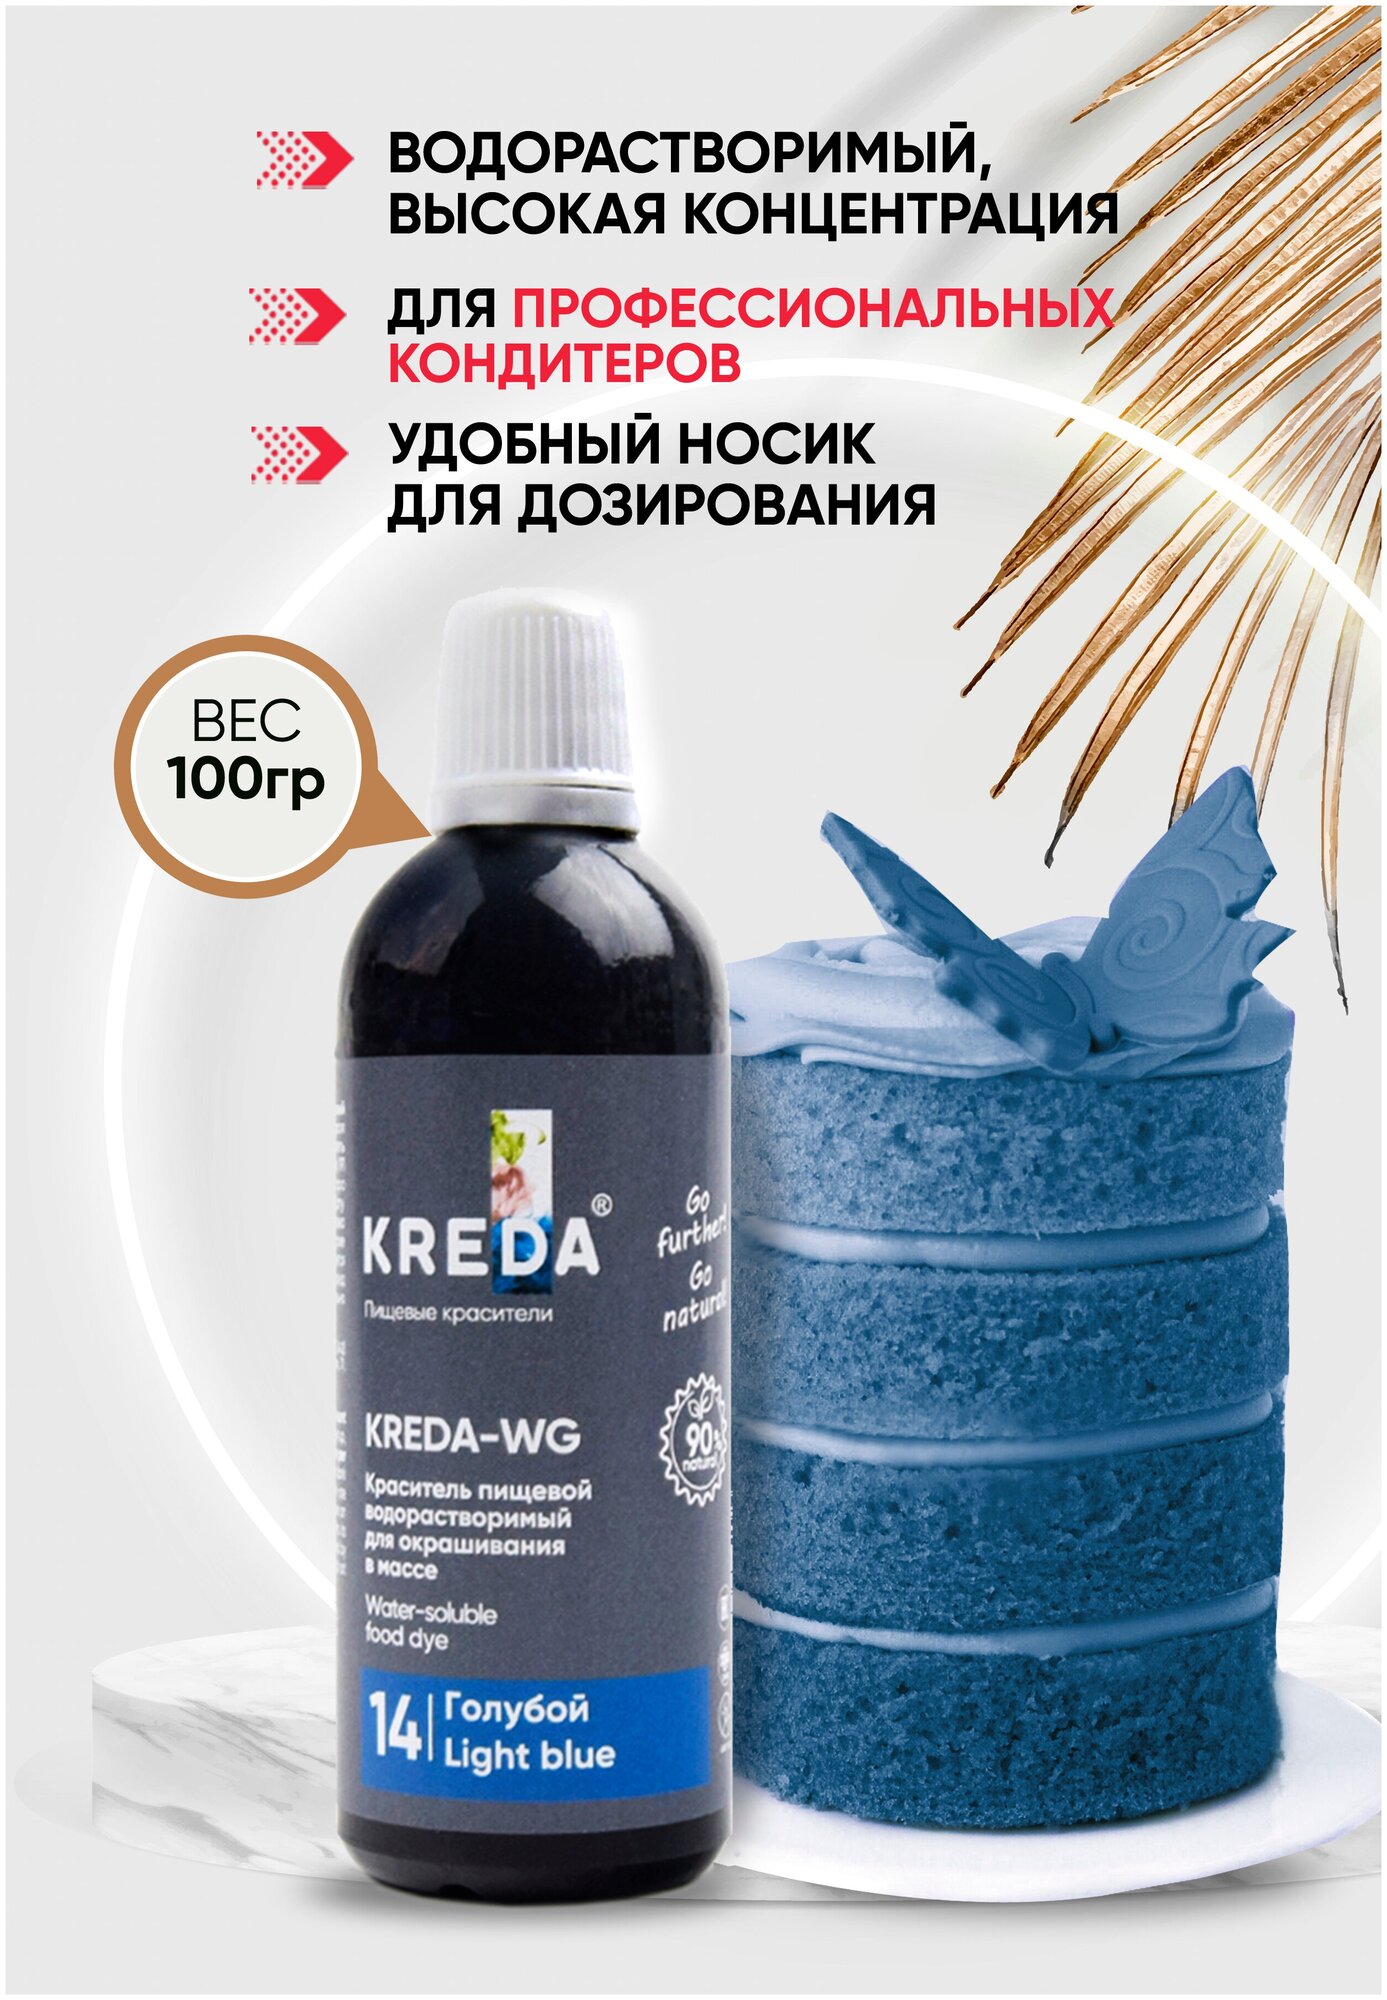 Краситель пищевой KREDA-WG голубой 14 гелевый 100г